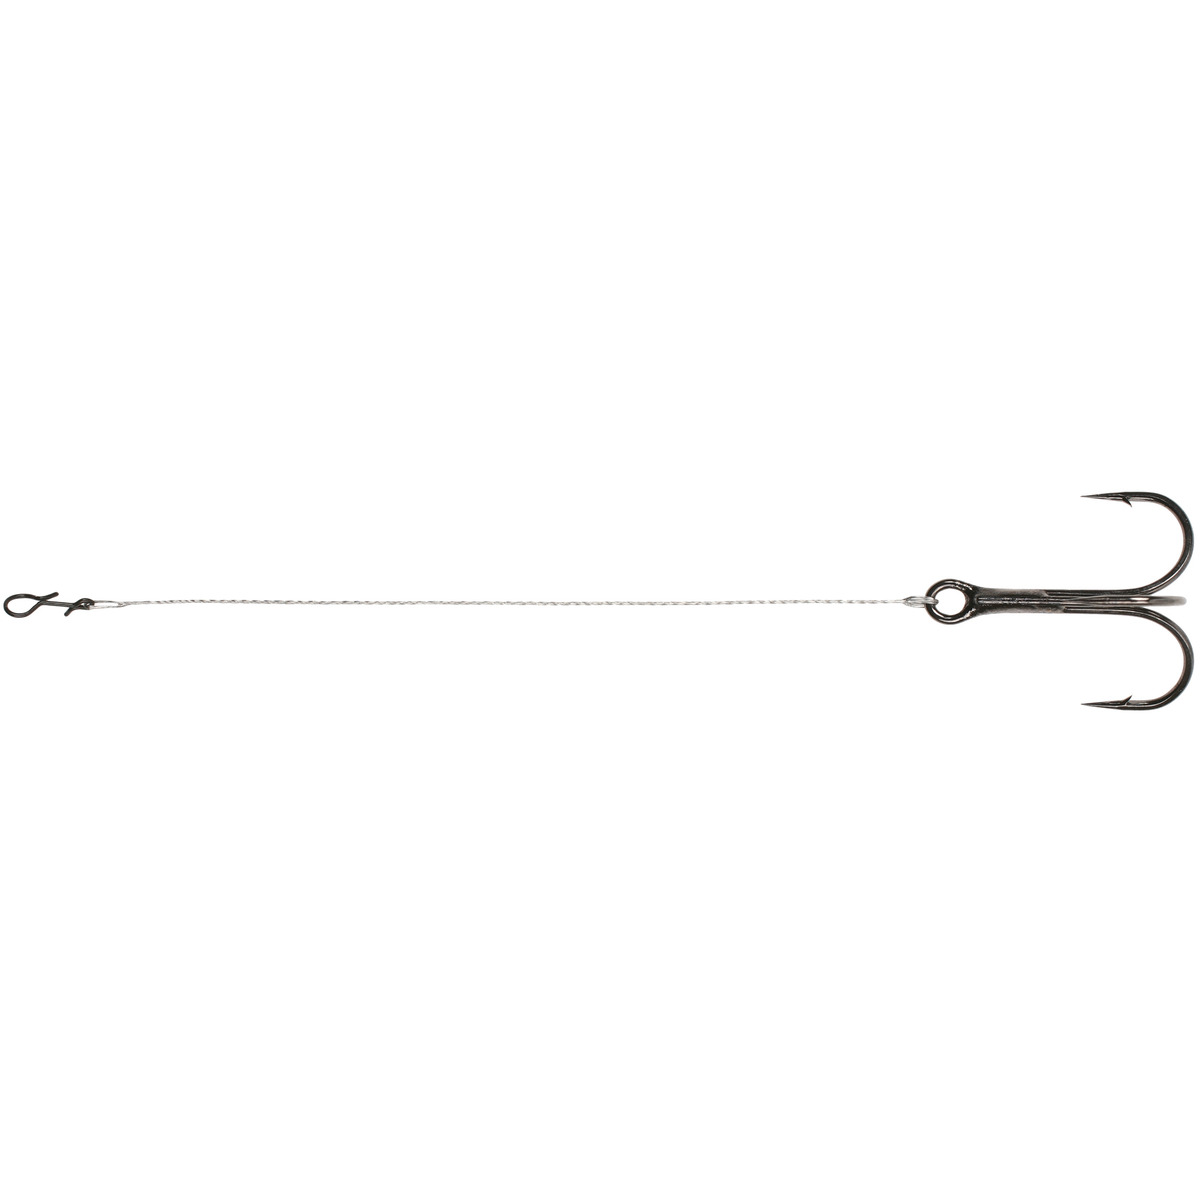 Mikado Ph Steel - 13 cmx14kg  treble hook: 1 / 0